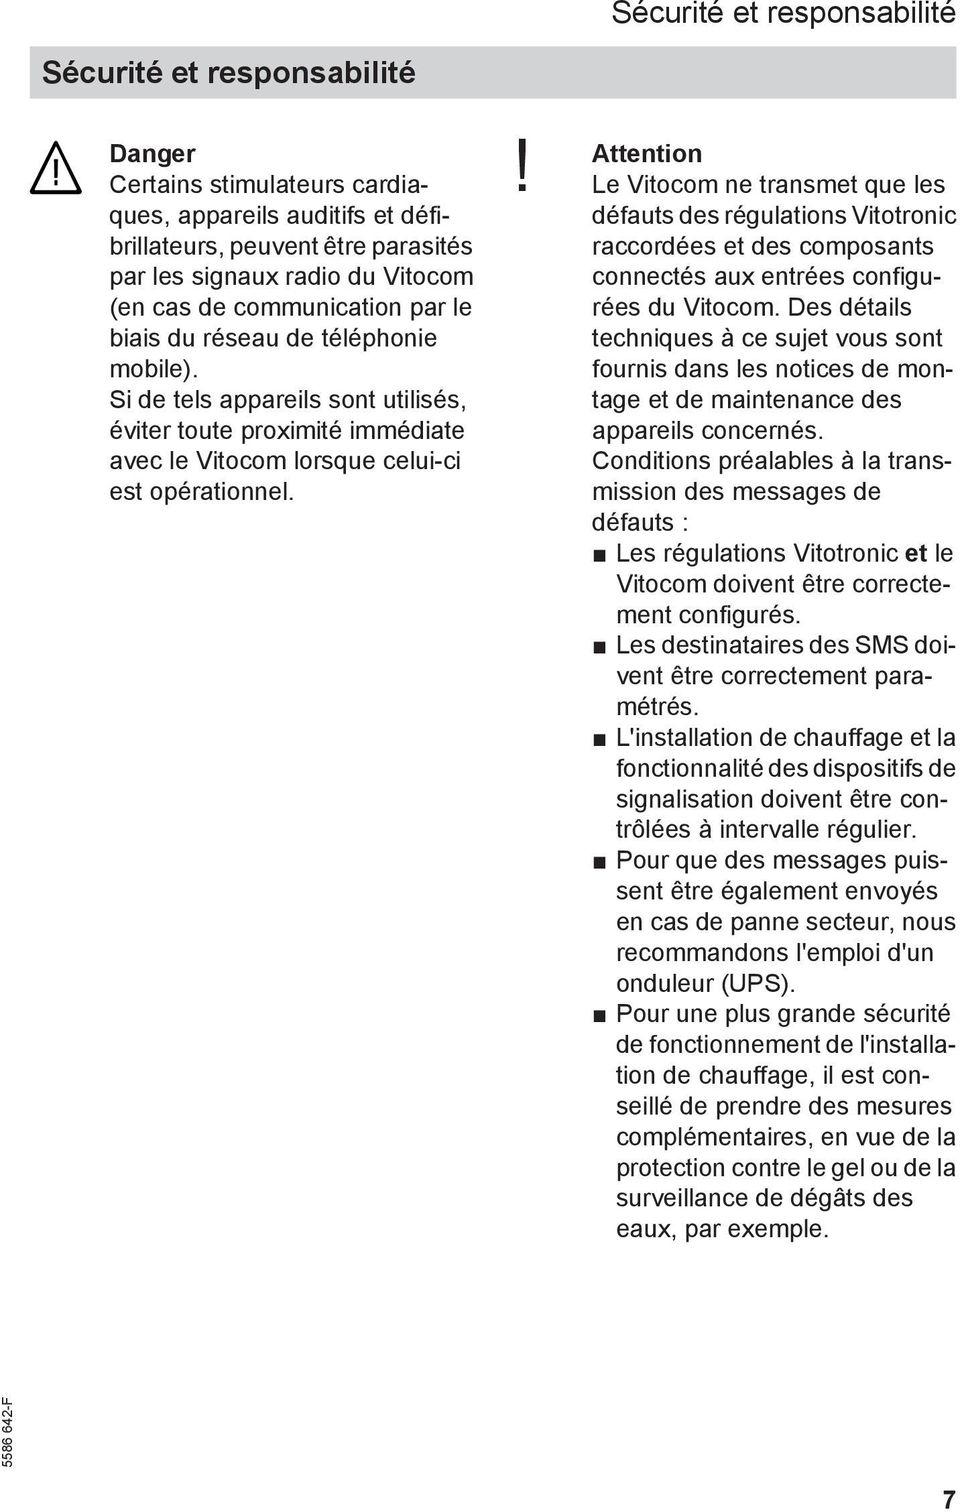 ! Attention Le Vitocom ne transmet que les défauts des régulations Vitotronic raccordées et des composants connectés aux entrées configurées du Vitocom.